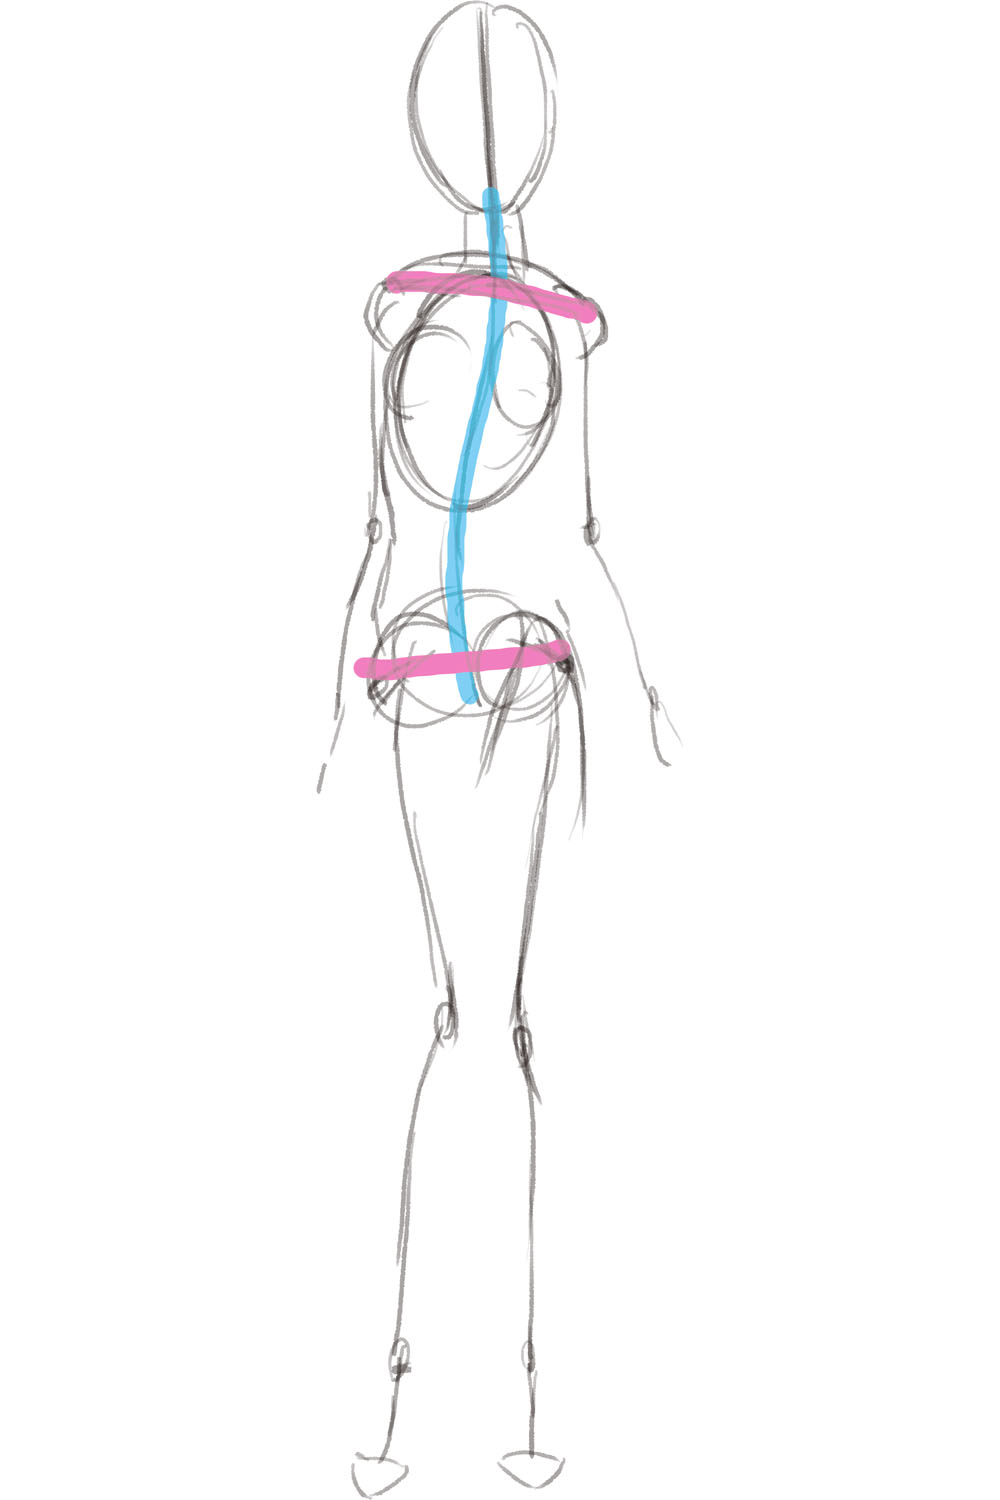 セクシーな立ちポーズを描く 骨格と筋肉を意識して描く立ち絵の基本 動きのあるポーズの描き方 セクシーキャラクター編 第3回 Pictures